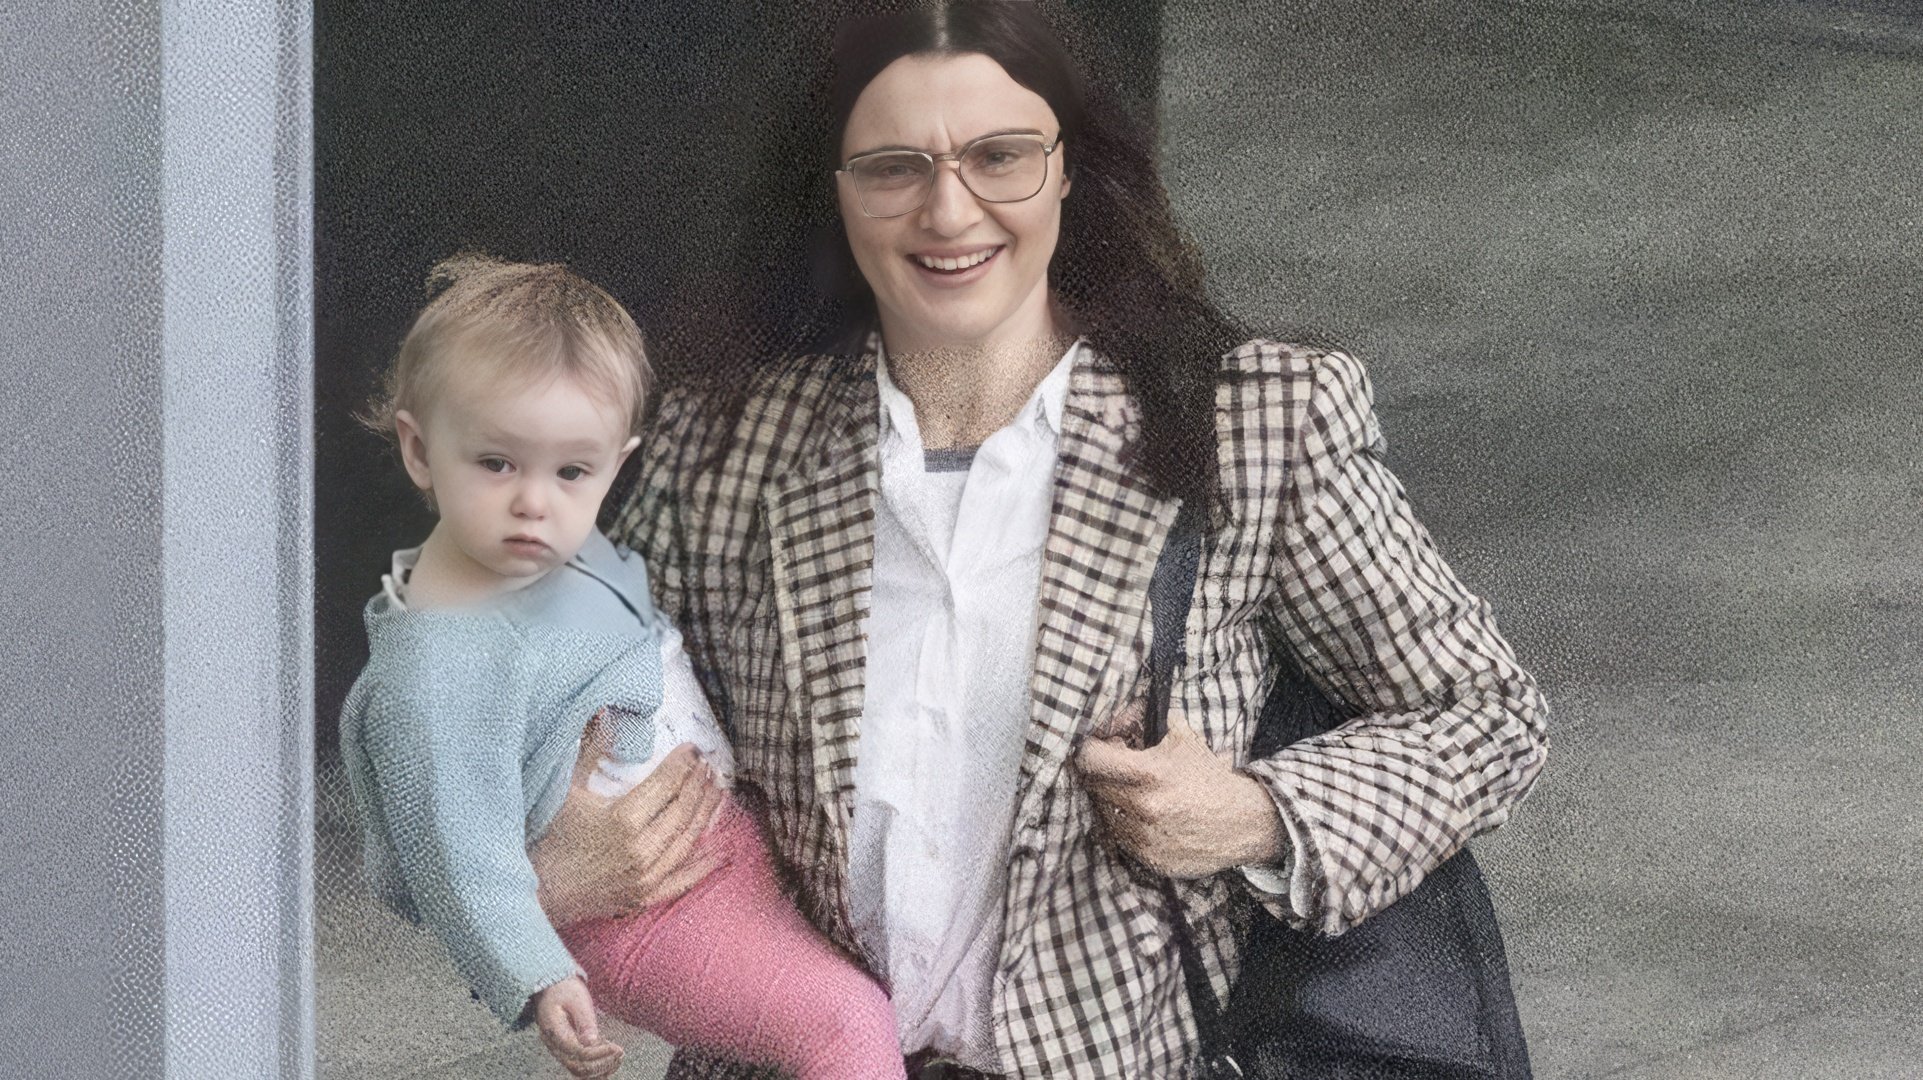 Rachel Weisz with her daughter